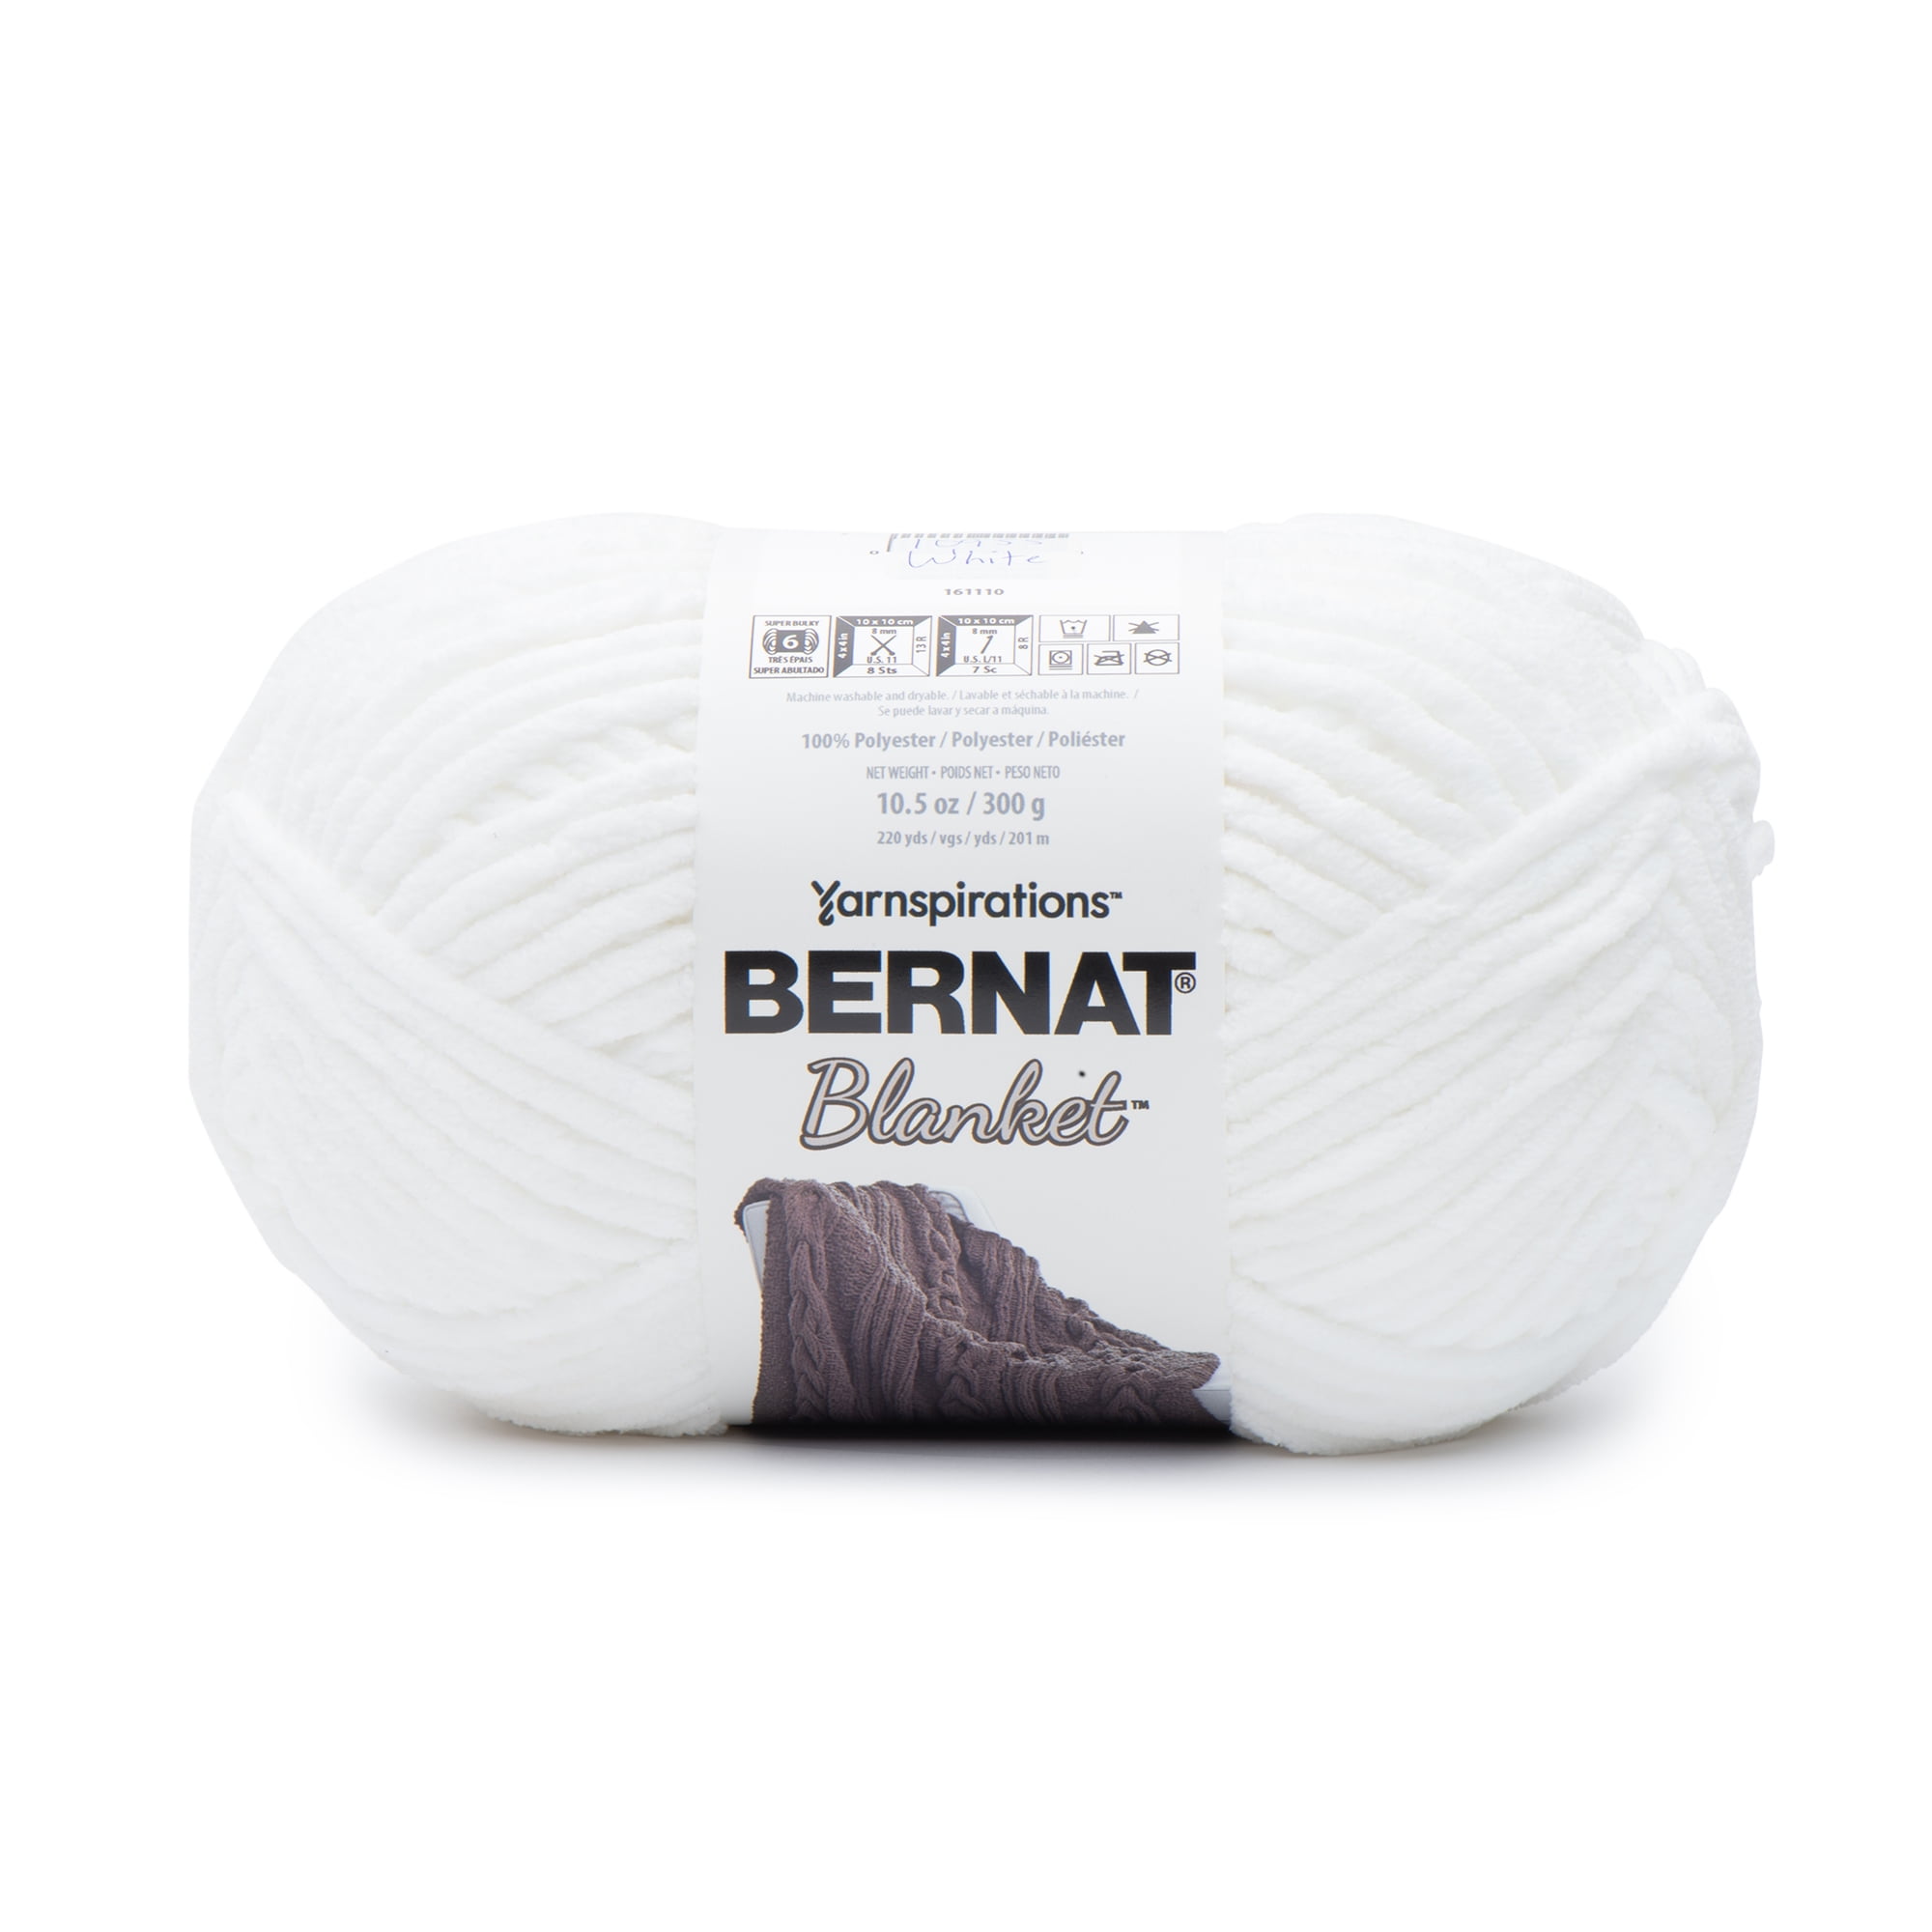 Bernat Blanket #6 Super Bulky Polyester Yarn, White 10.5oz/300g, 220 Yards